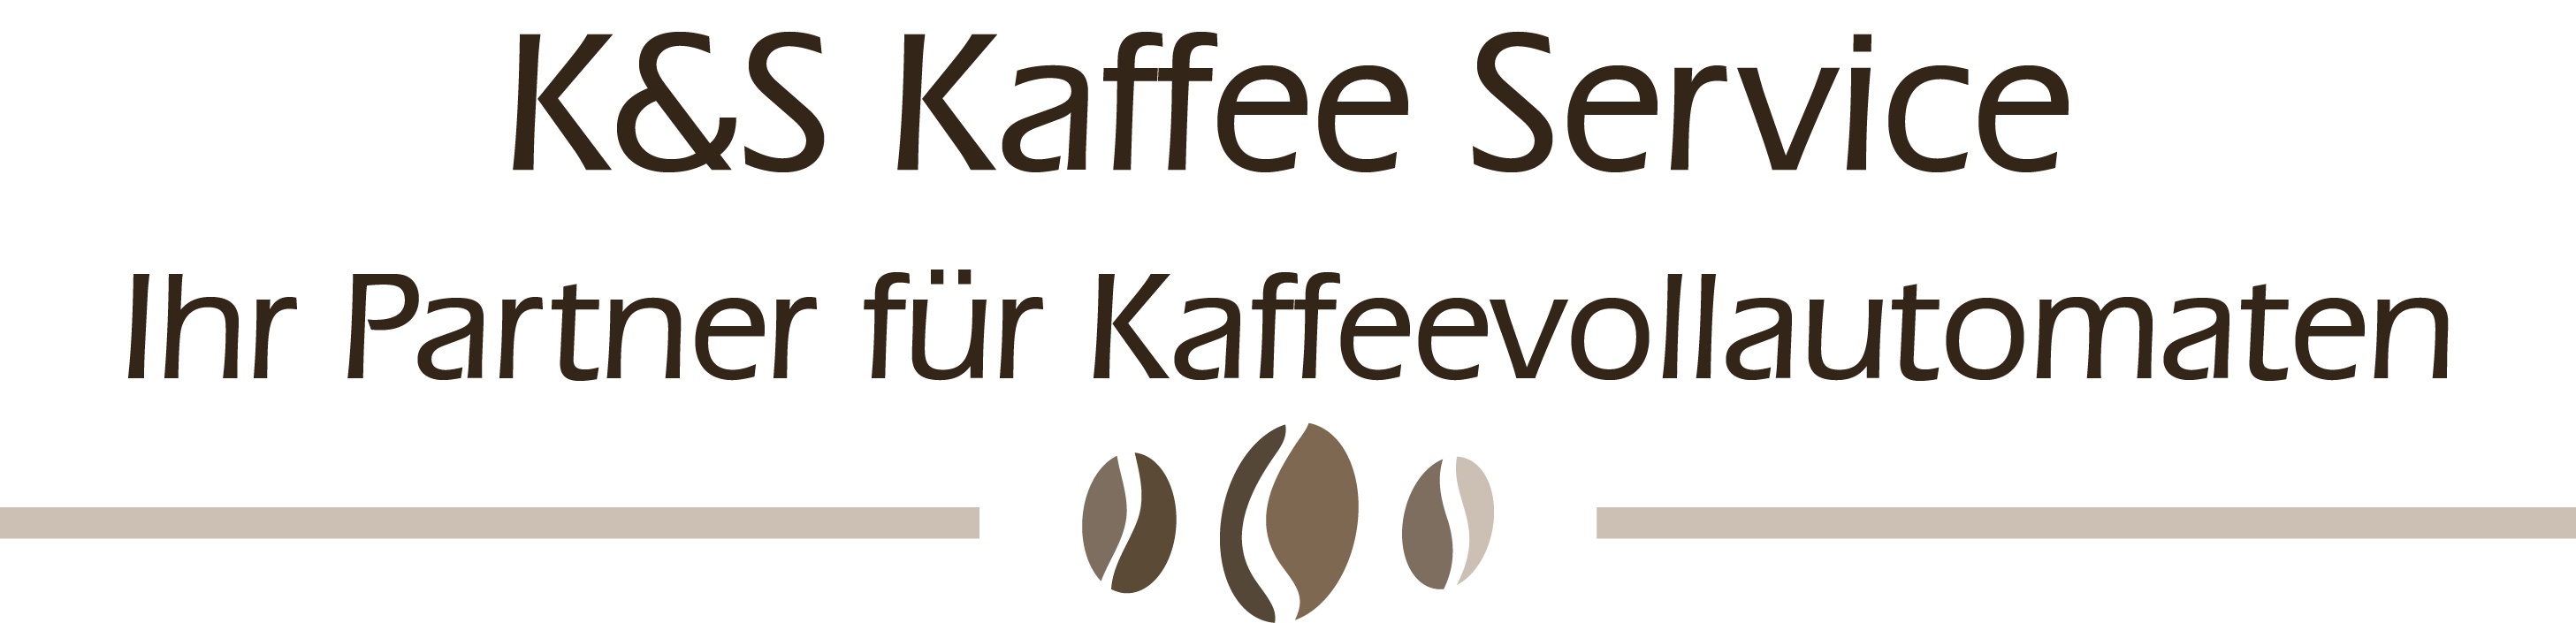 K & S Kaffee Service